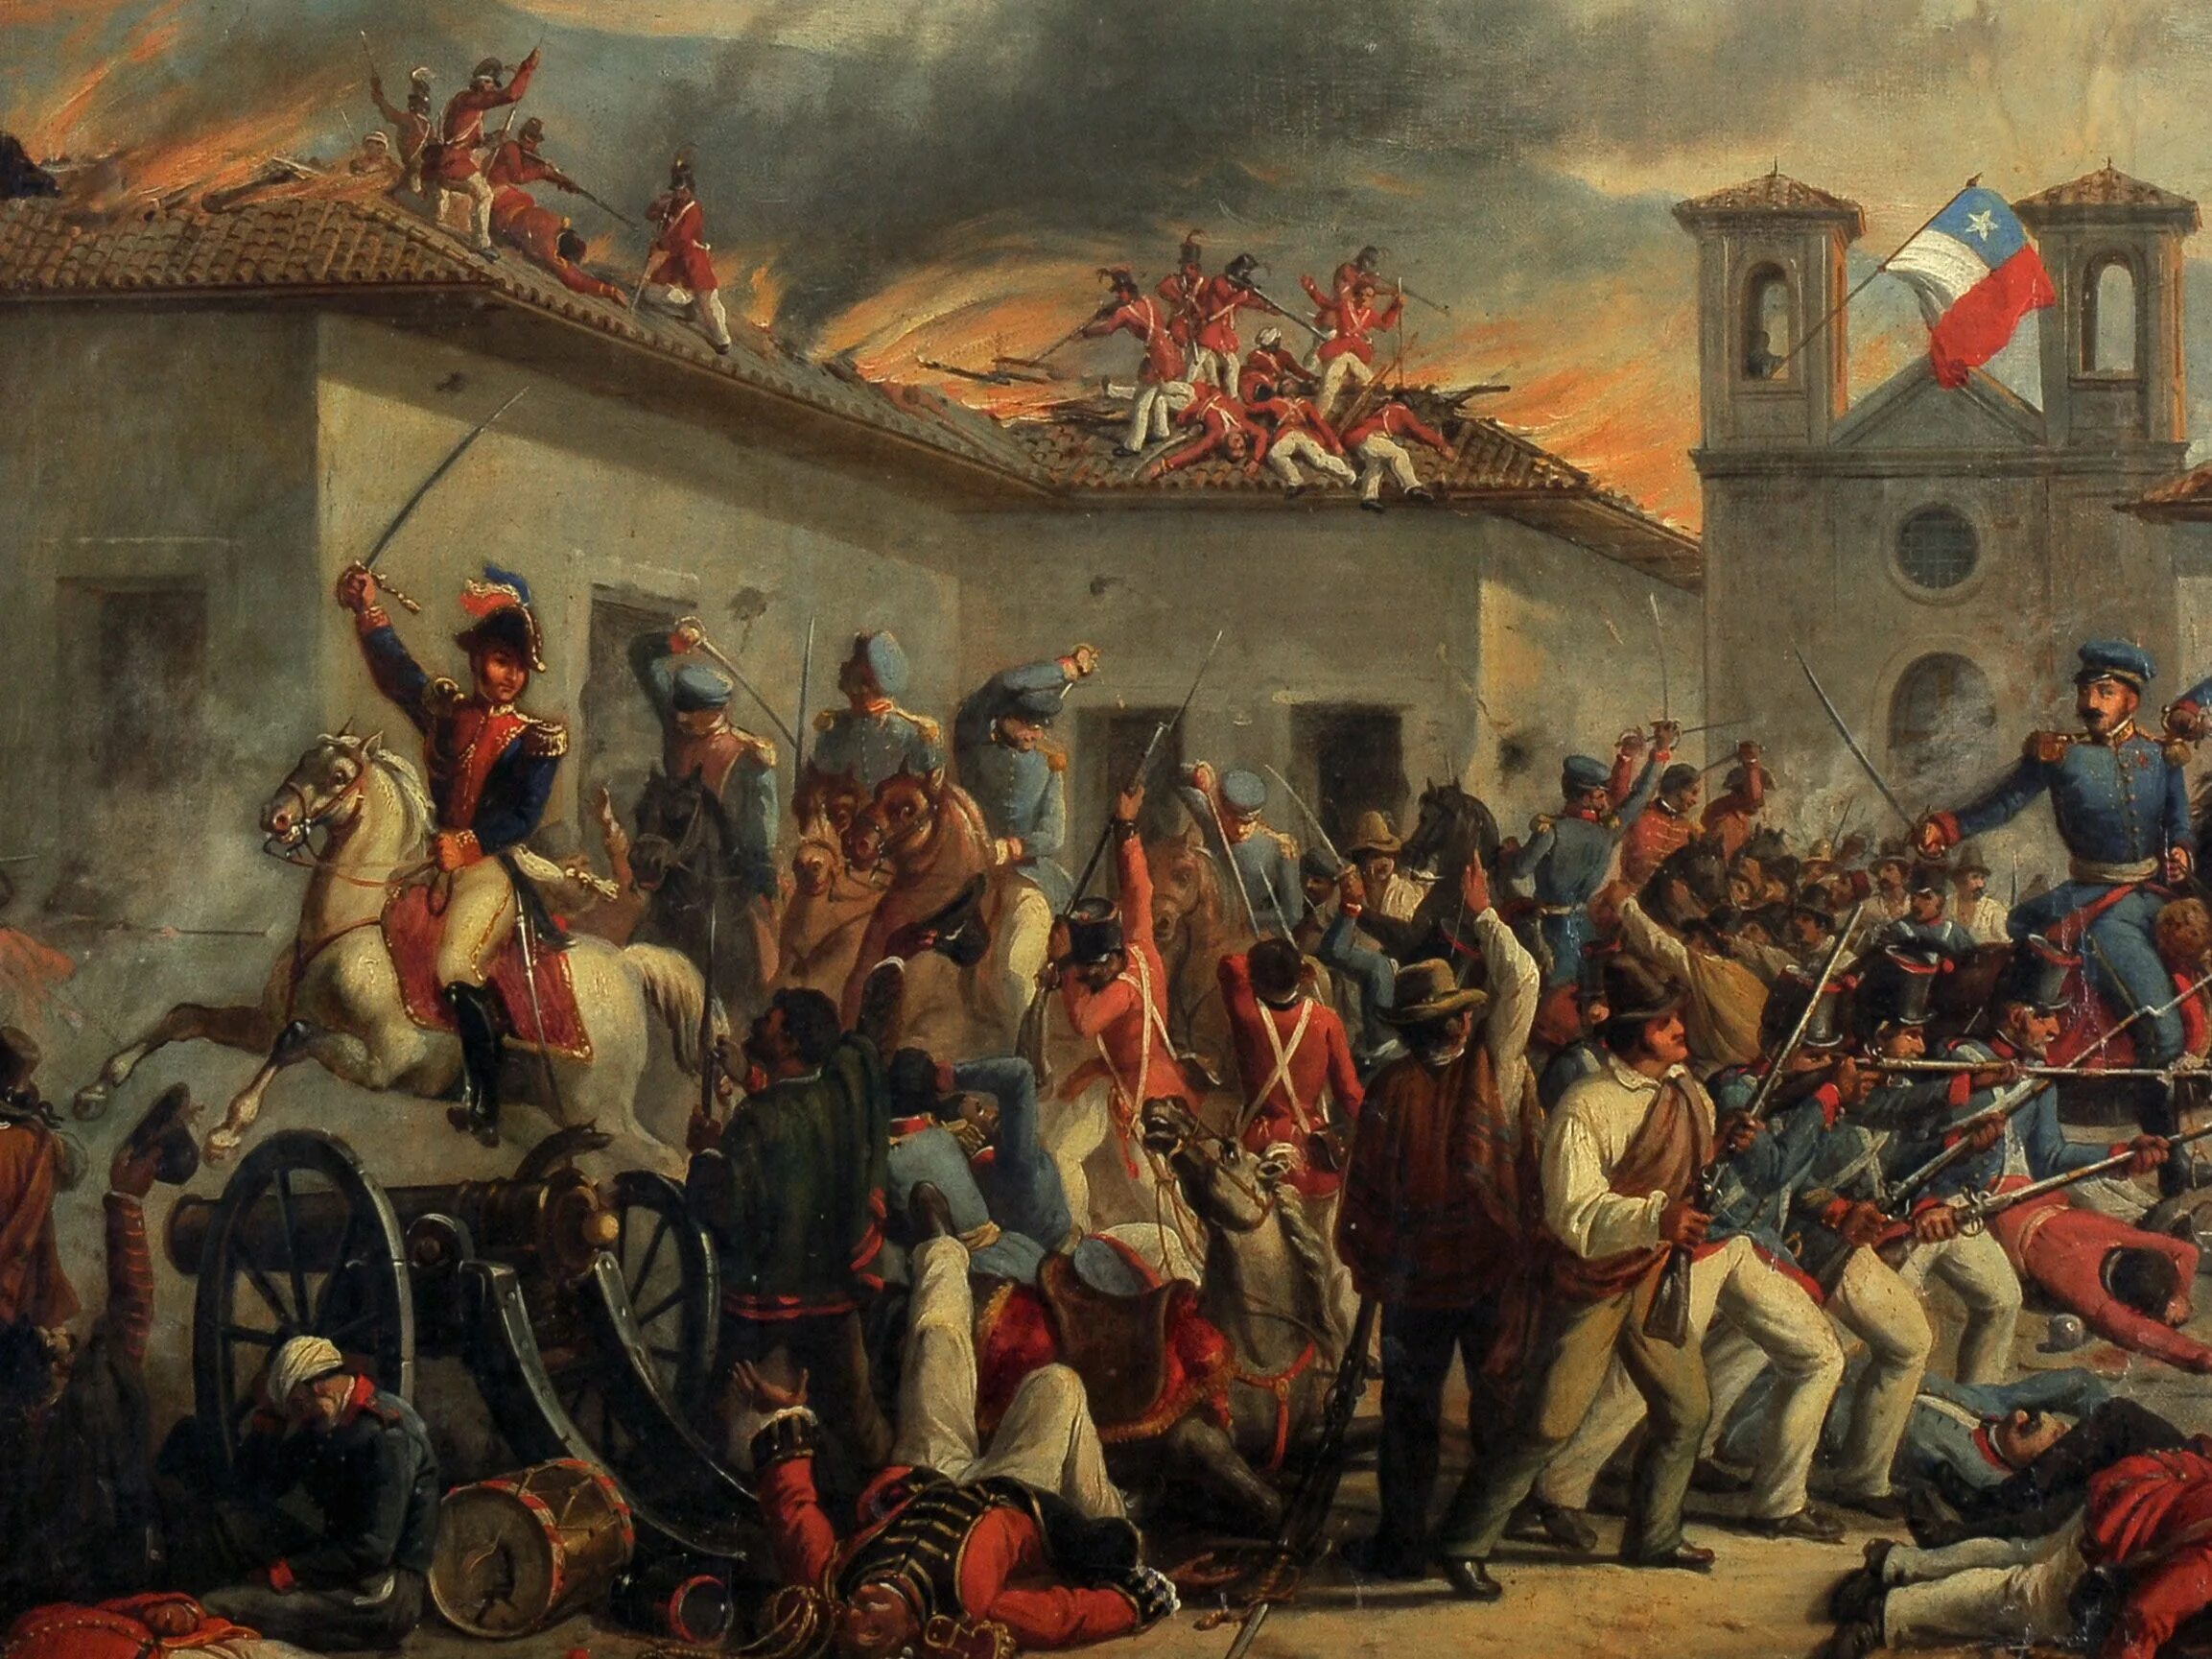 Борьба с испанией. Война за независимость испанских колоний (1810— 1826). Война за независимость Латинской Америки 1810-1826. Война за независимость испанских колоний в Америке. Война за независимость испанских колоний в Америке (1810-1826.